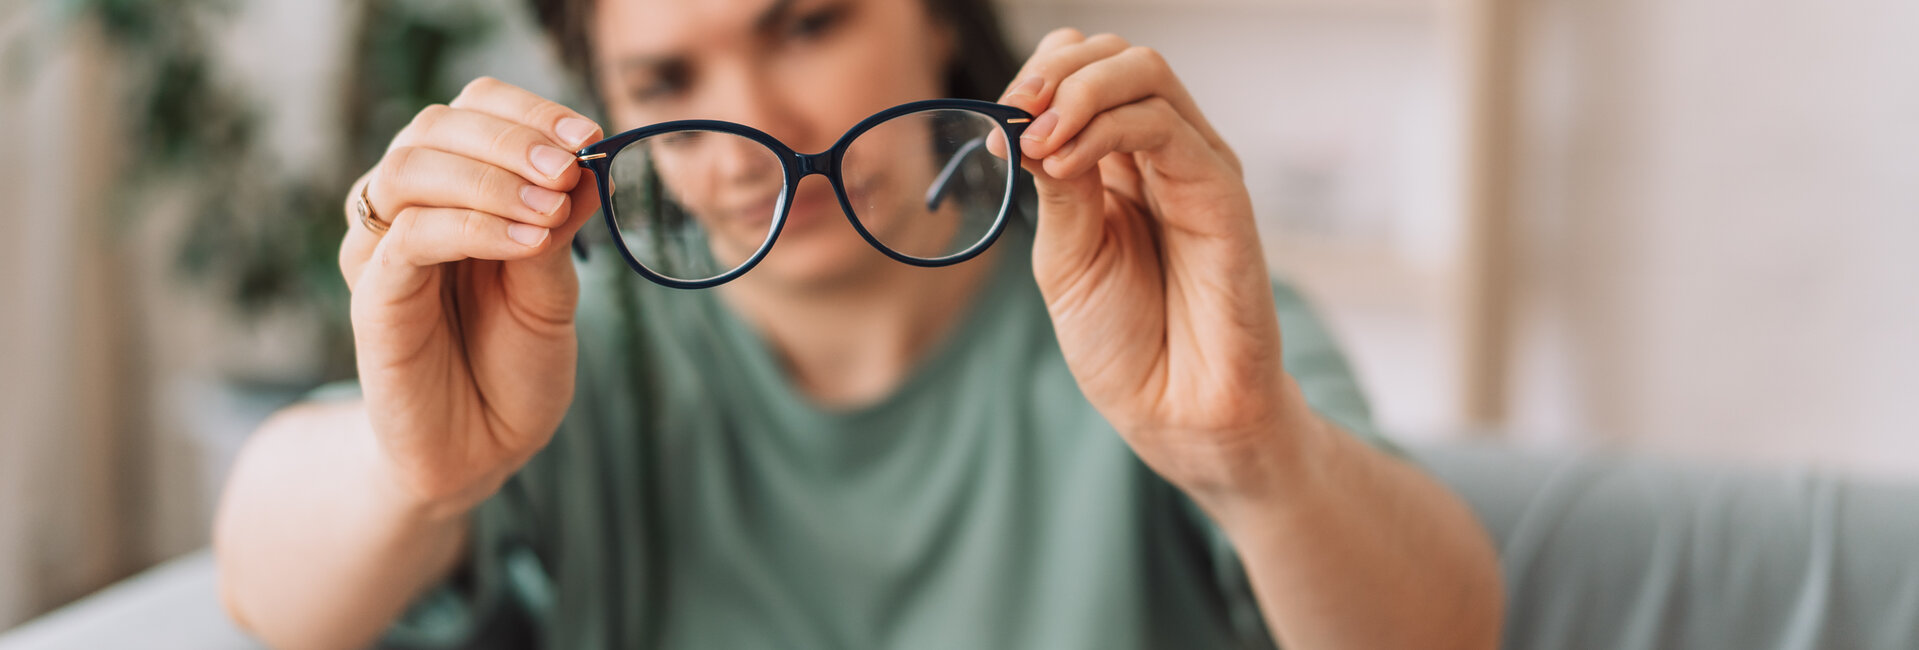 Liste des garanties après un achat de lunette avec Durif Optique dans le 03